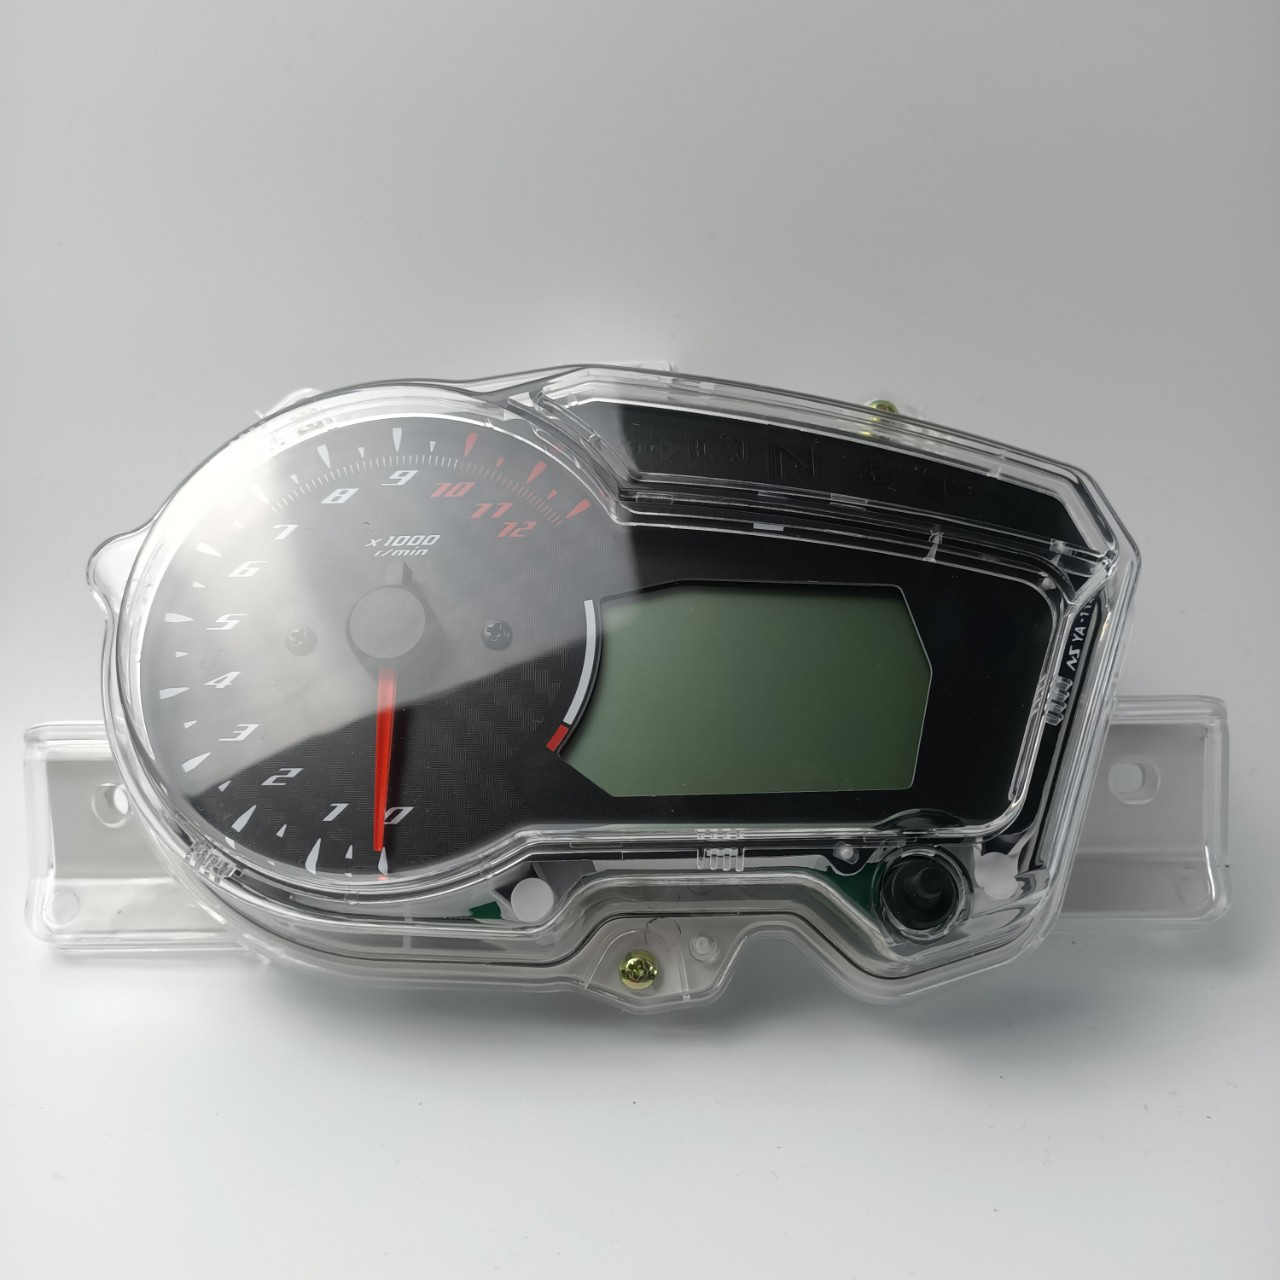 Đồng hồ cơ dành cho xe  EXCITER 150 đời 2015 đến 2018 - 8876,,'K11T1'